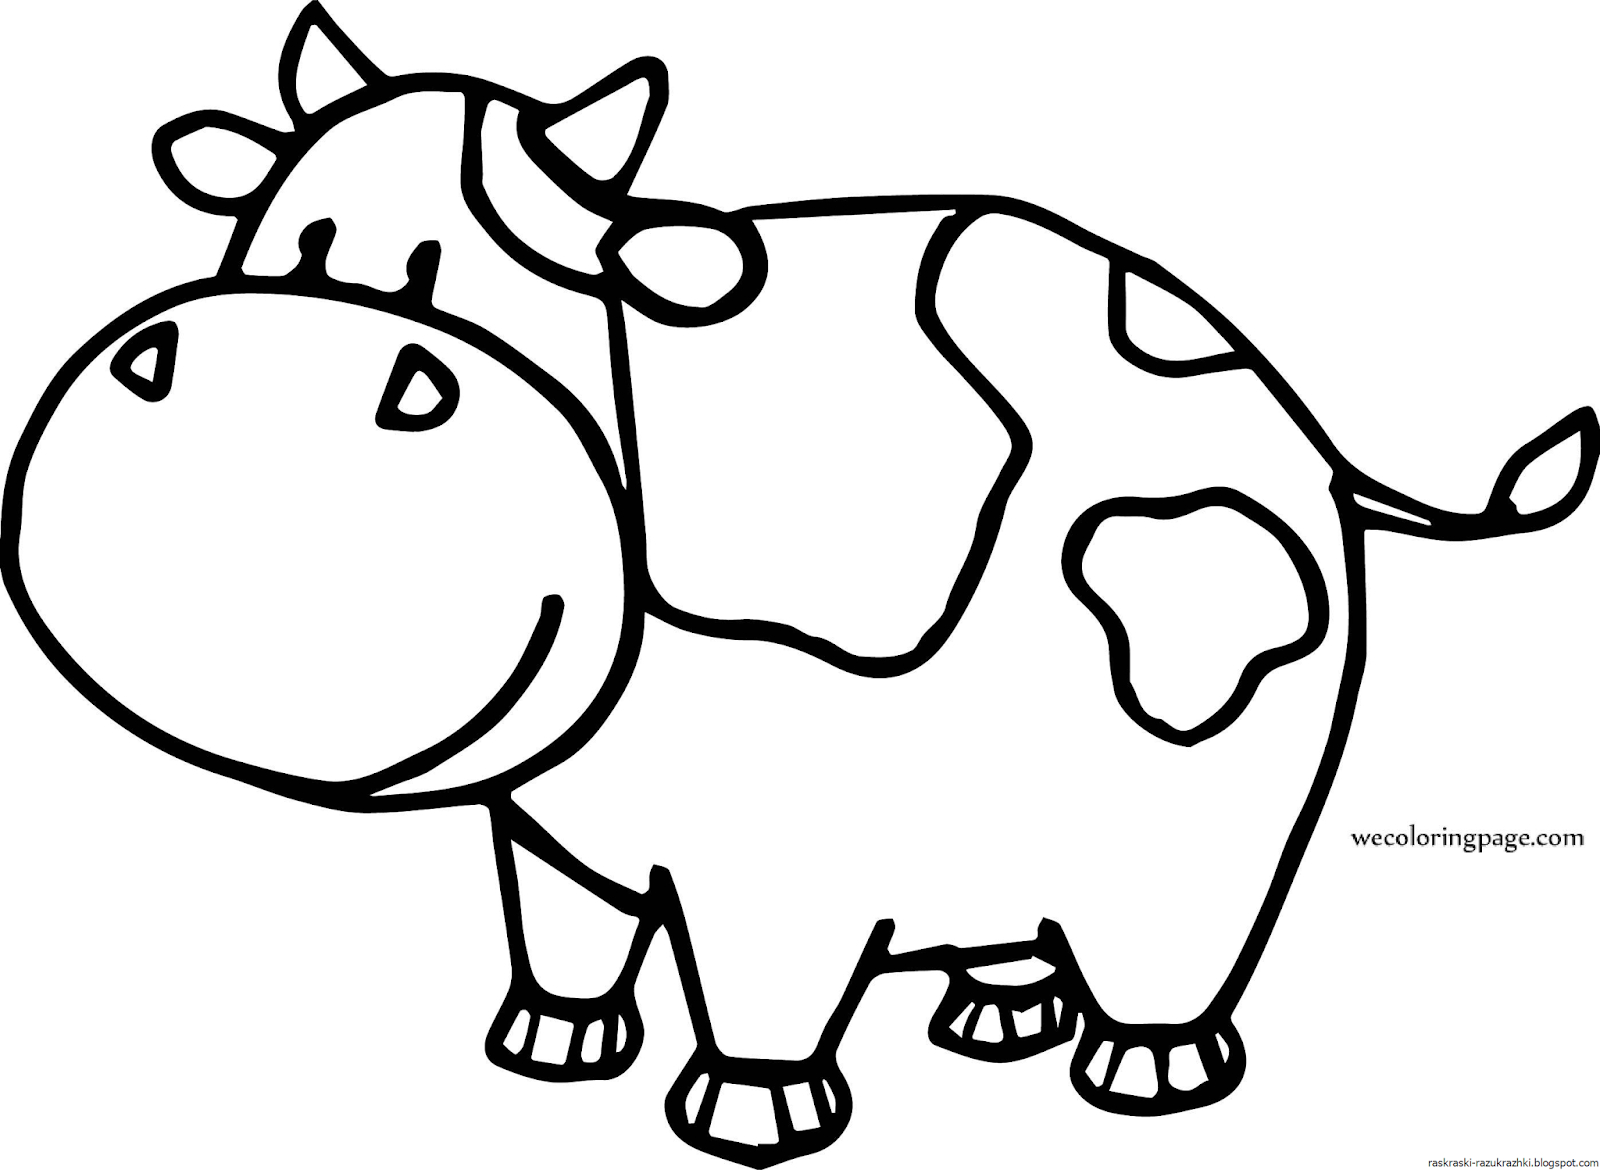 Раскраски для детей 3 года коровы. Раскраска корова. Коровка раскраска для детей. Корова раскраска для детей. Коровка раскраска для малышей.